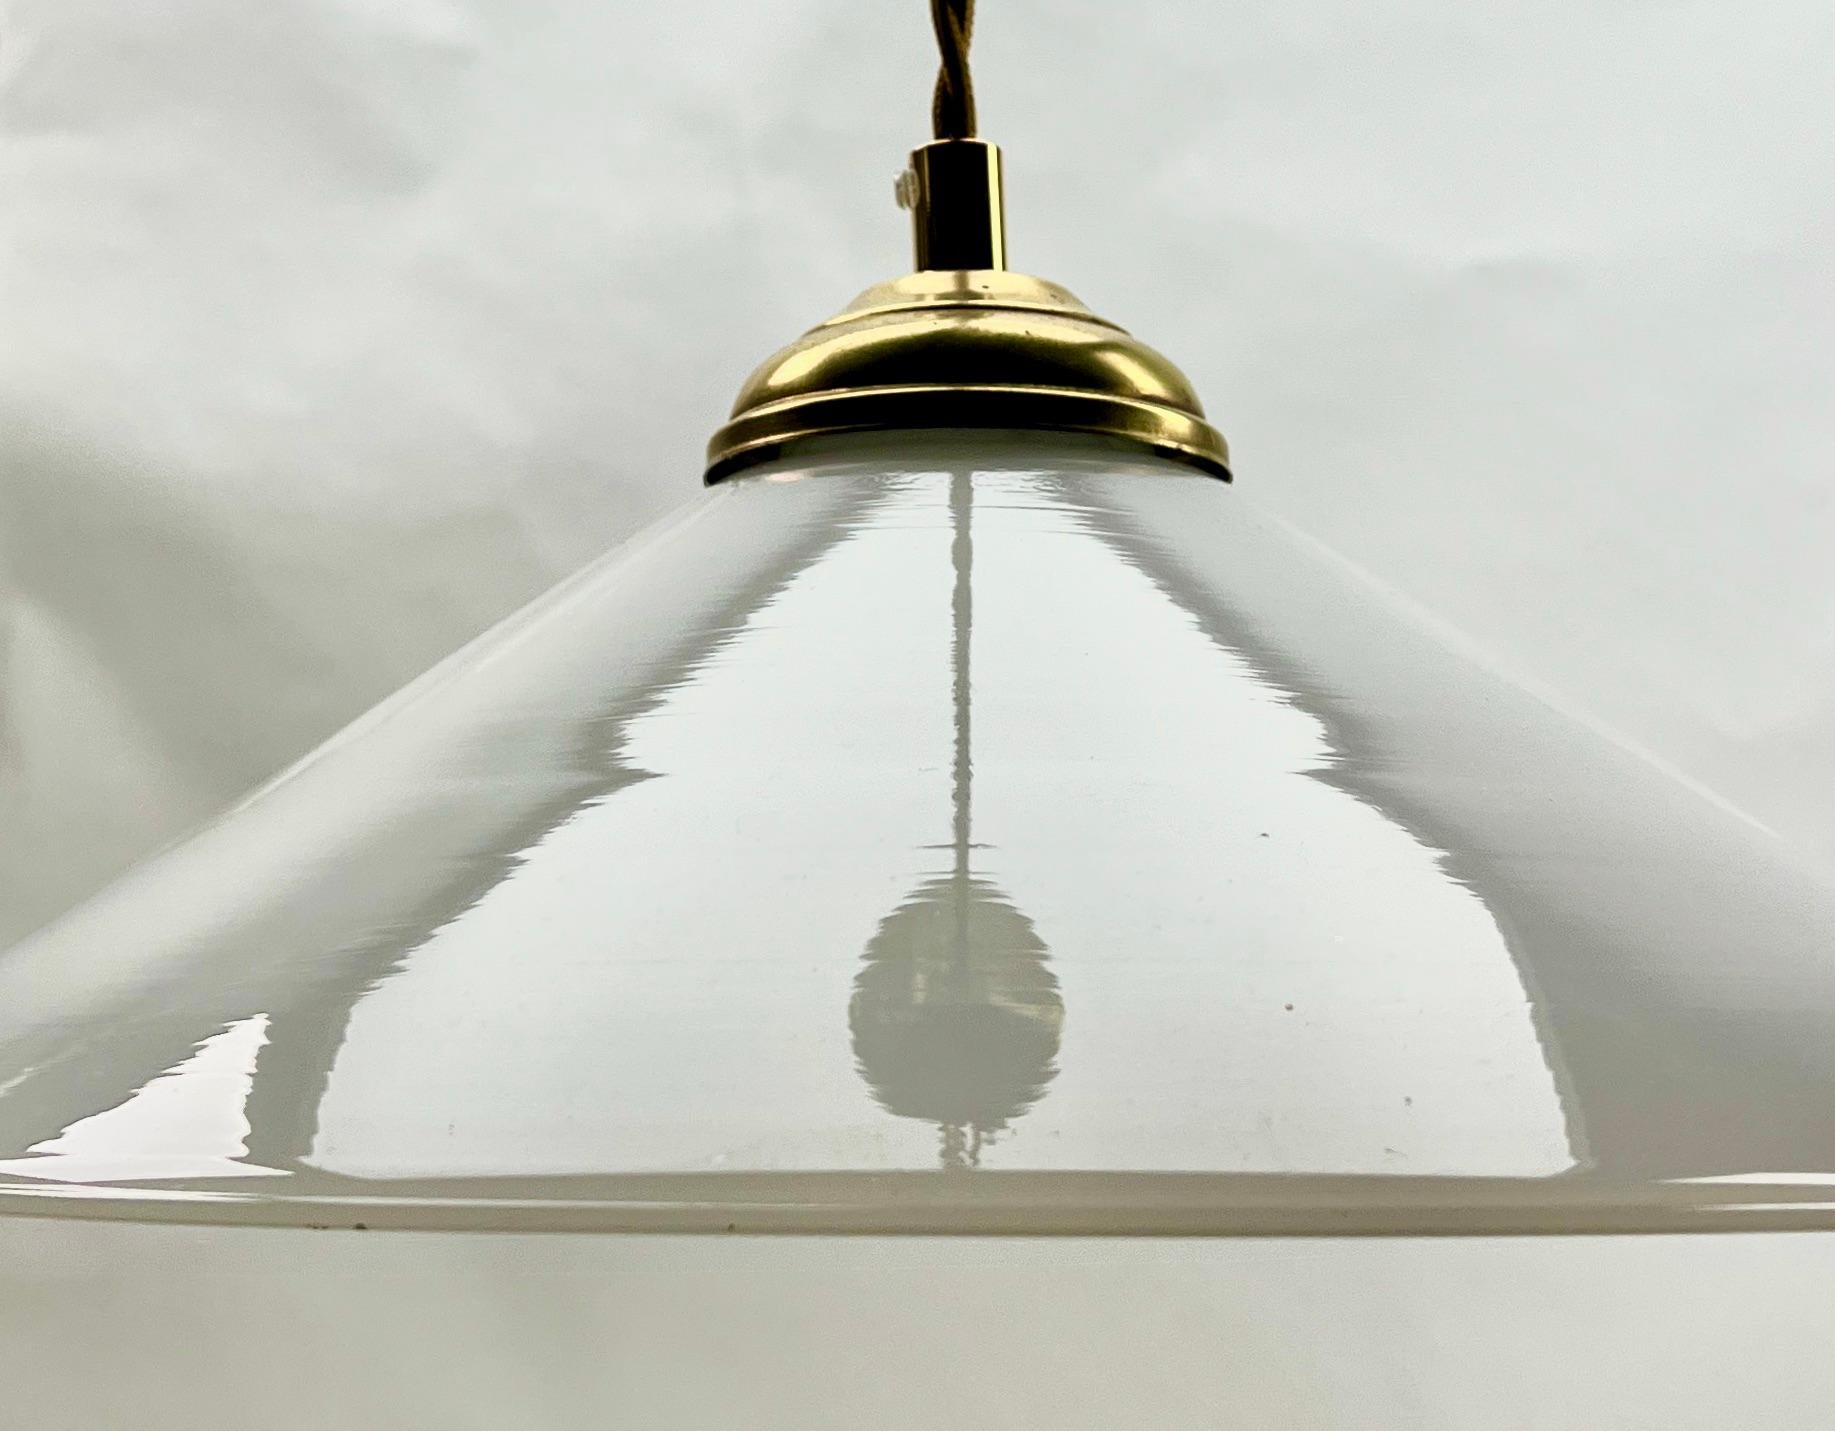 Mid-20th Century Art Nouveau Opaline Ceiling Lamp, Scailmont Belgium Glass Shade, 1930s